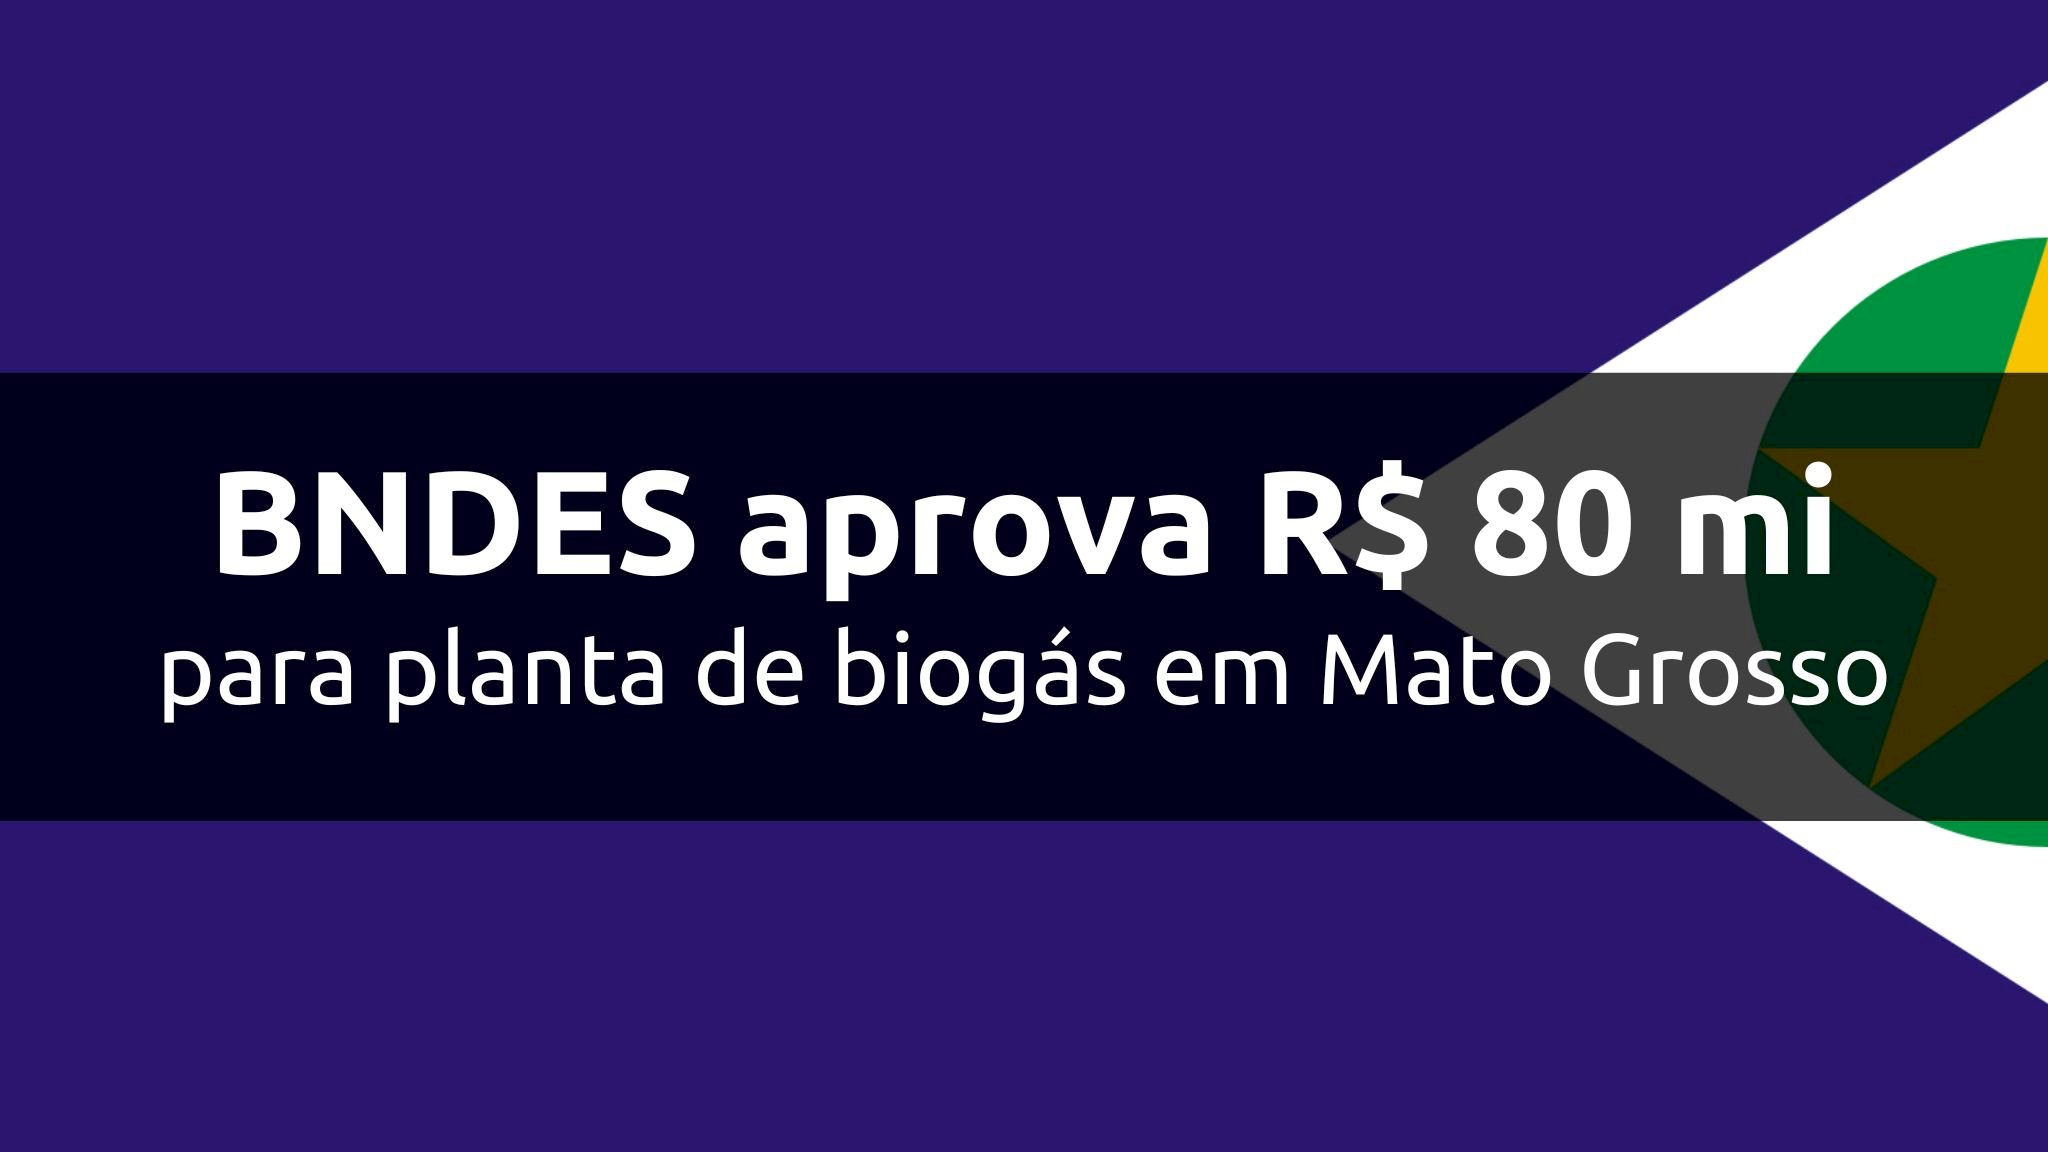 BNDES aprova R$ 80 mi para planta de biogás em Mato Grosso